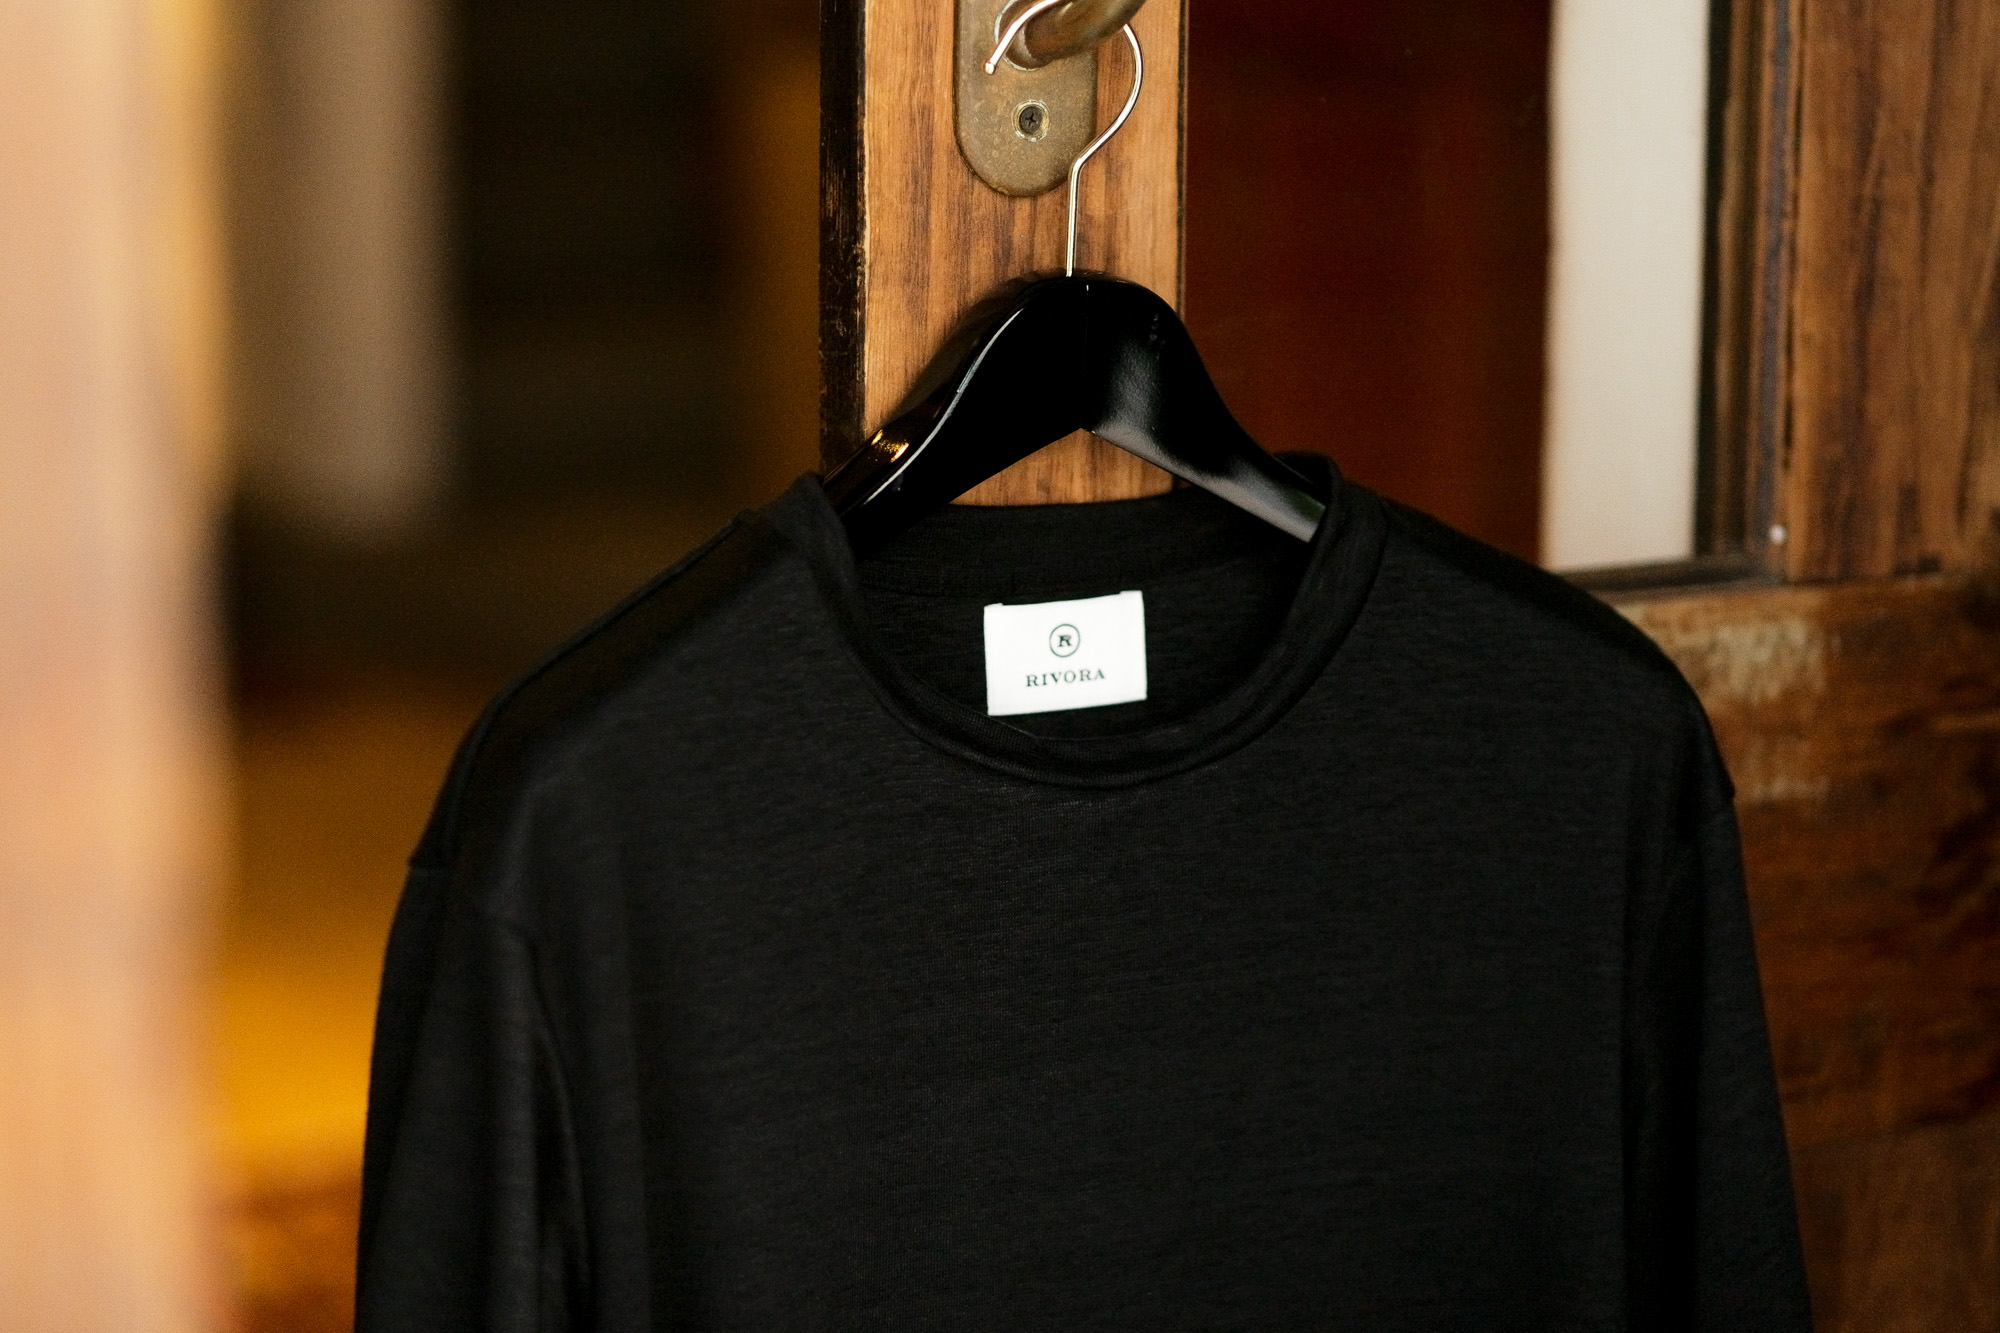 RIVORA (リヴォラ) Vintage Linen Layered T-Shirts ヴィンテージ リネン レイヤード Tシャツ BLACK (ブラック・010) MADE IN JAPAN (日本製) 2021 春夏新作 【入荷しました】【フリー分発売開始】愛知 名古屋 Alto e Diritto altoediritto アルトエデリット 半袖TEE